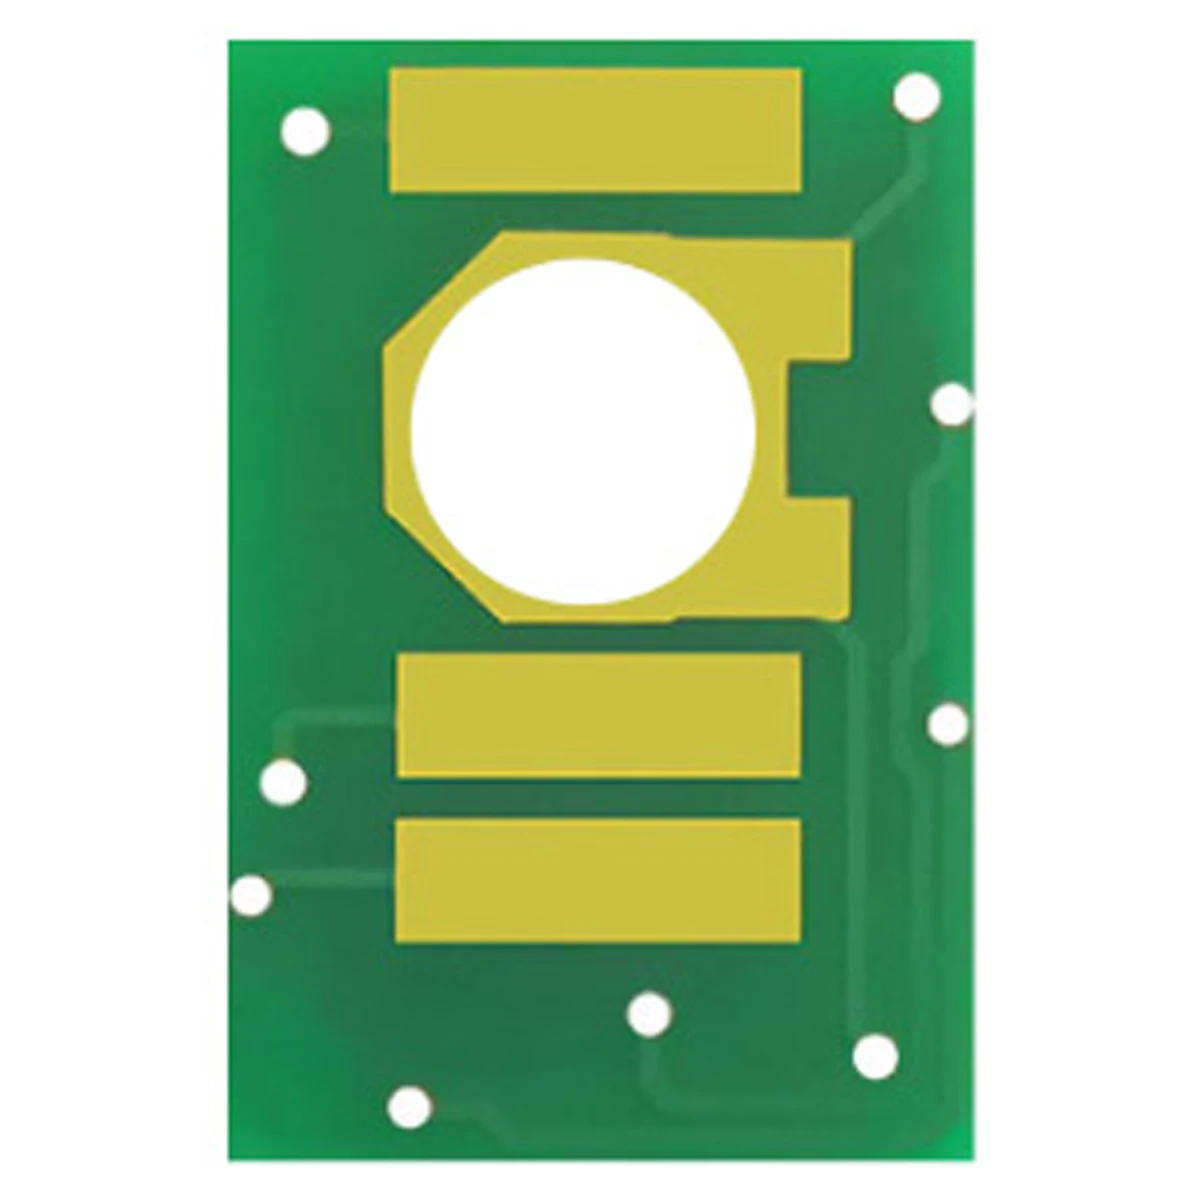 

Chip for Ricoh MP C8002 MP C6502 MPC8002 MPC6502 MPC 8002 MPC 6502 MPC8002sp MPC6502sp MP C8002sp MP C6502sp Cartridge Rest chip